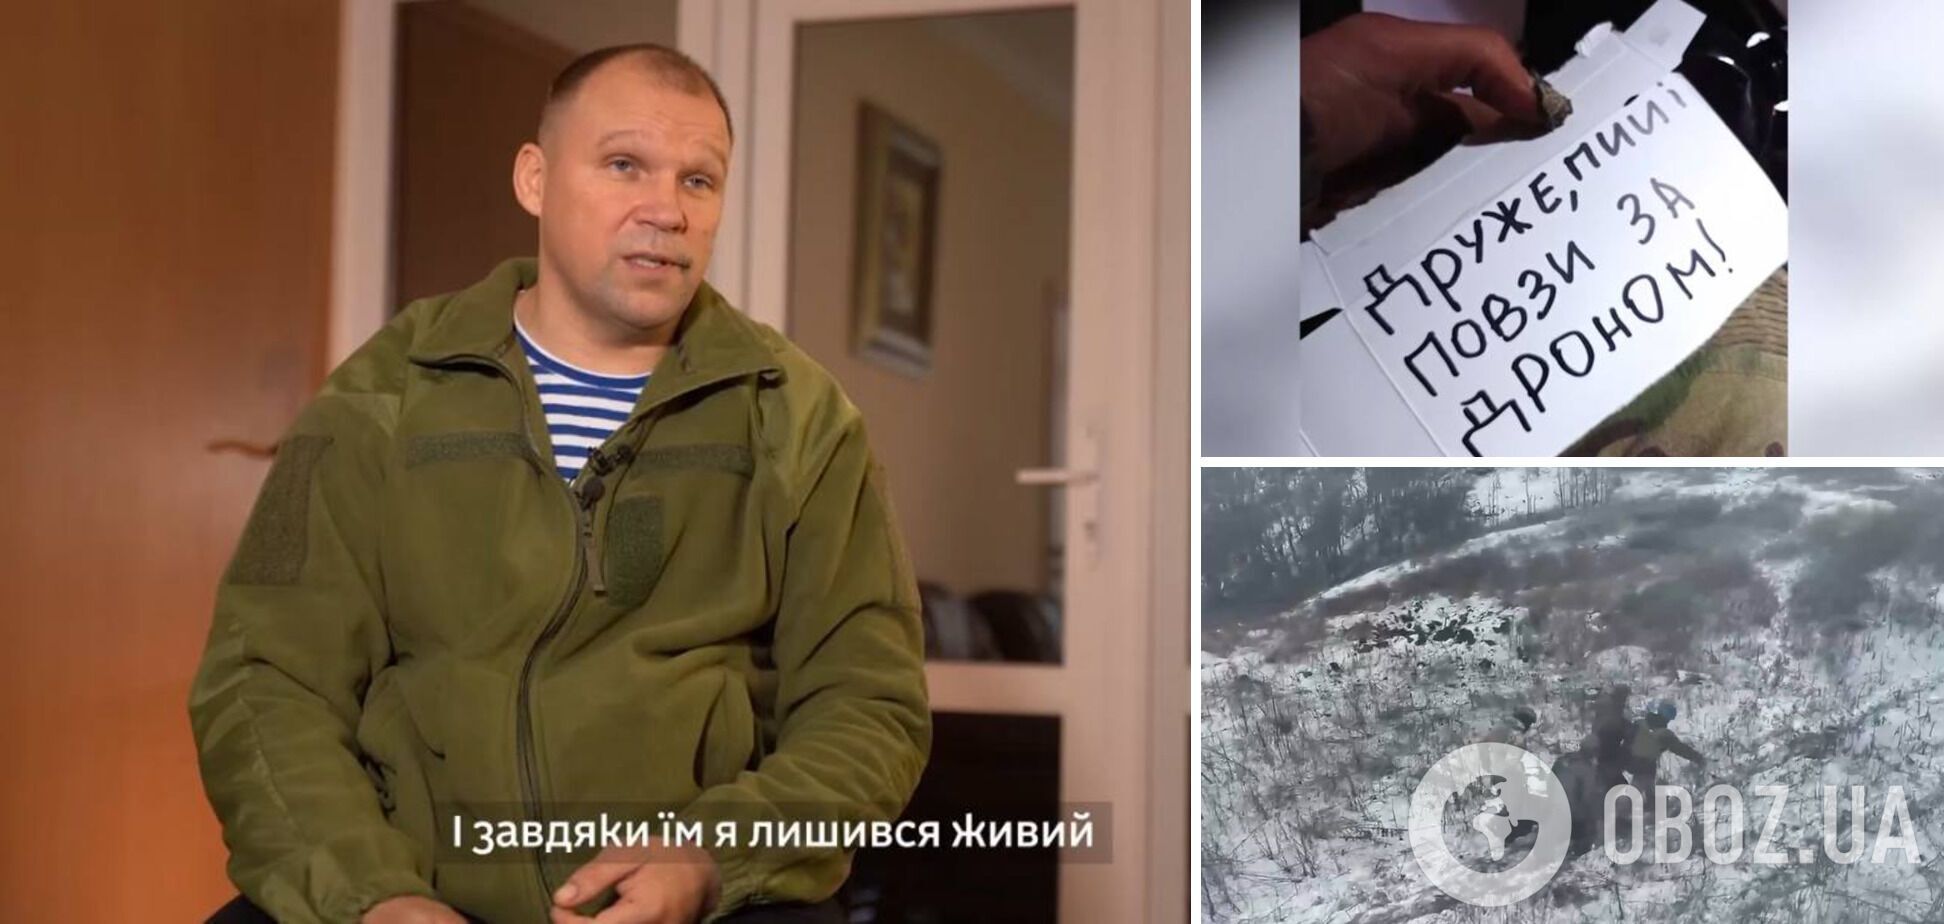 Смог проползти 700 метров: украинский защитник рассказал, как побратимам удалось спасти его с помощью дрона. Видео